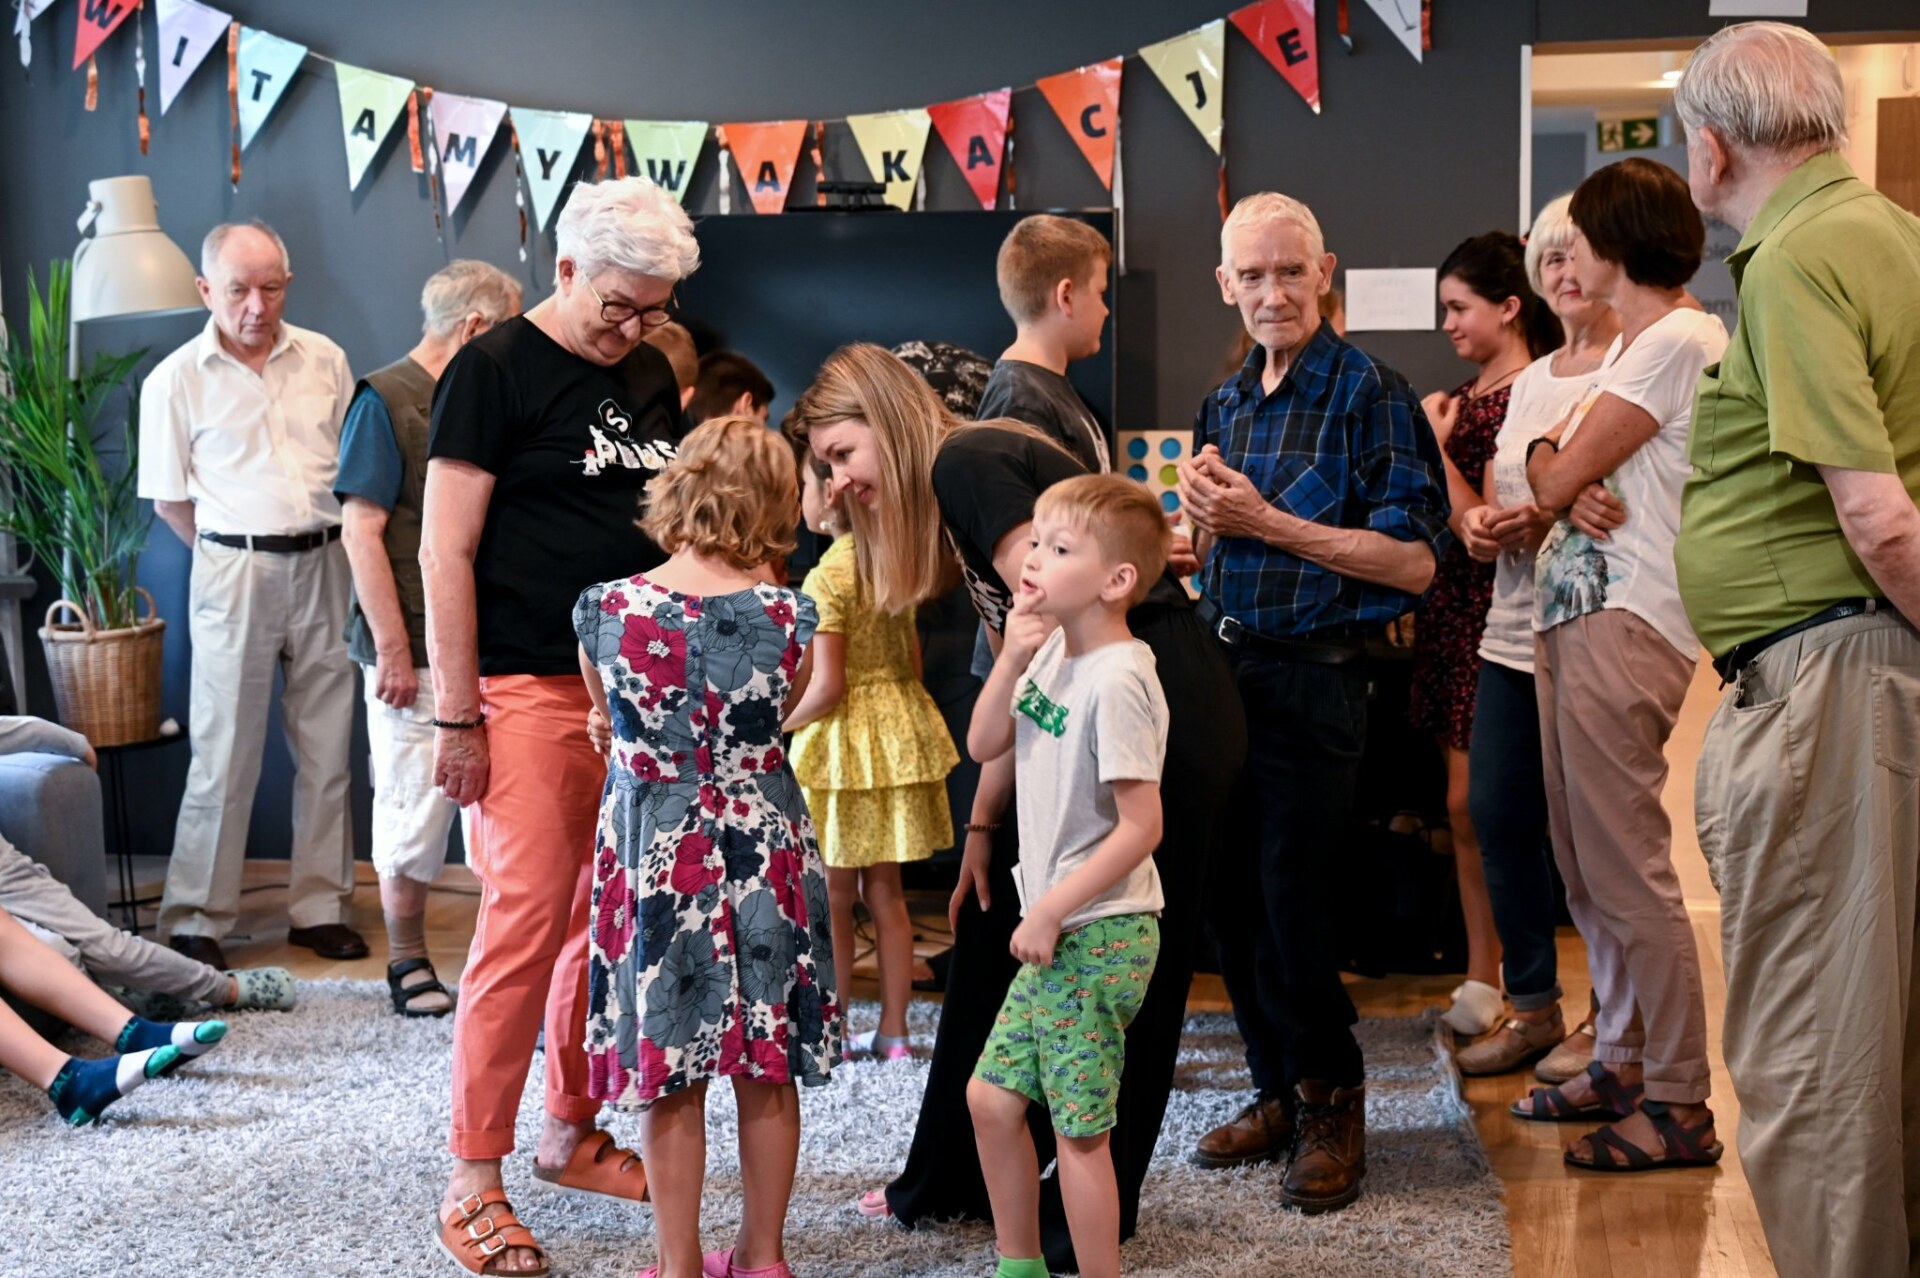 Grupa seniorów i dzieci w różnym wieku stoi w sali ozdobionej girlandą.